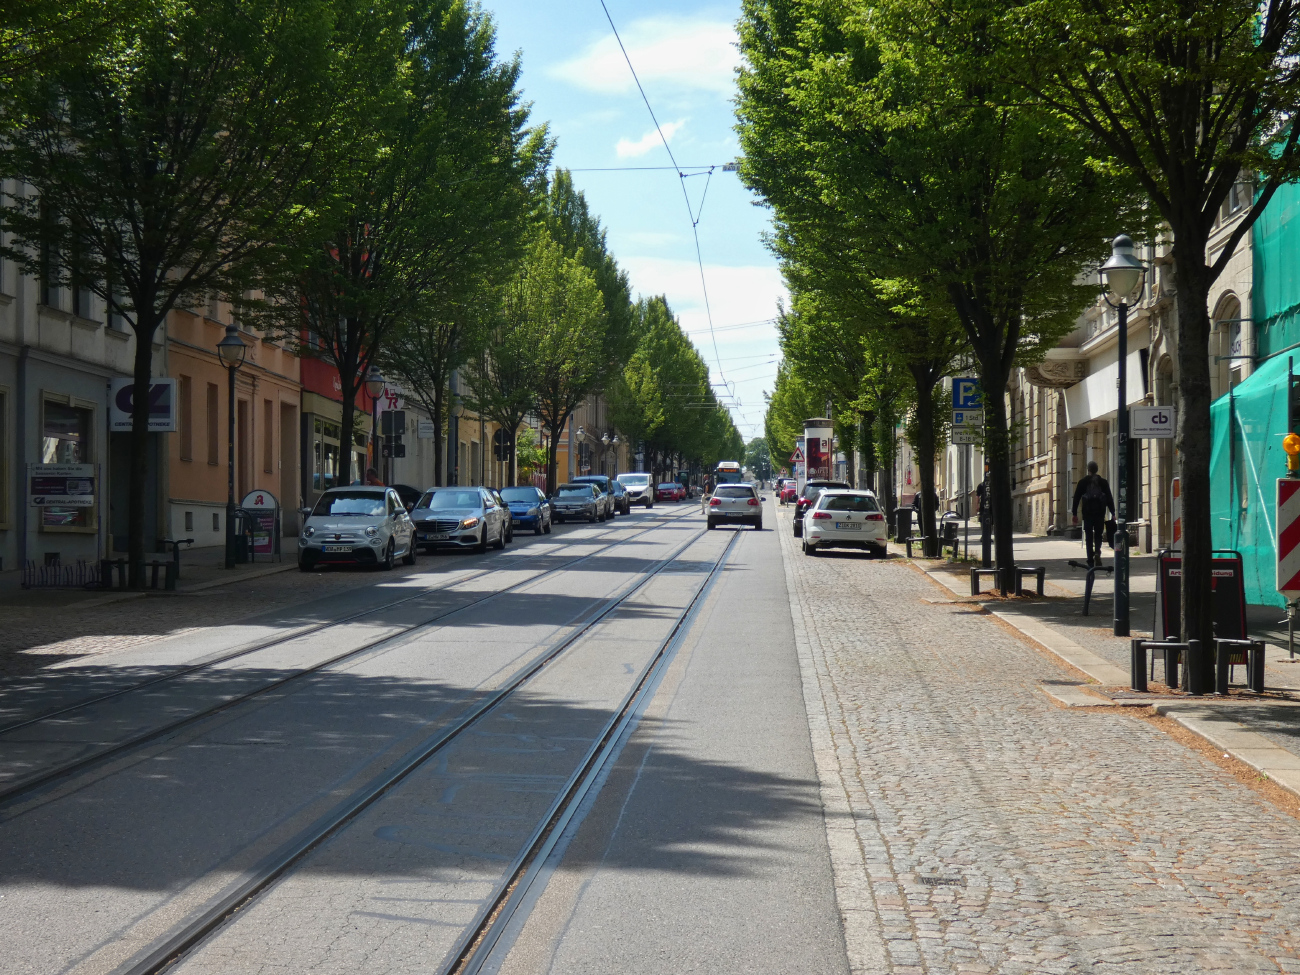 Zwickau — Tram lines and Infrastructure • Straßenbahnstrecken und Infrastruktur